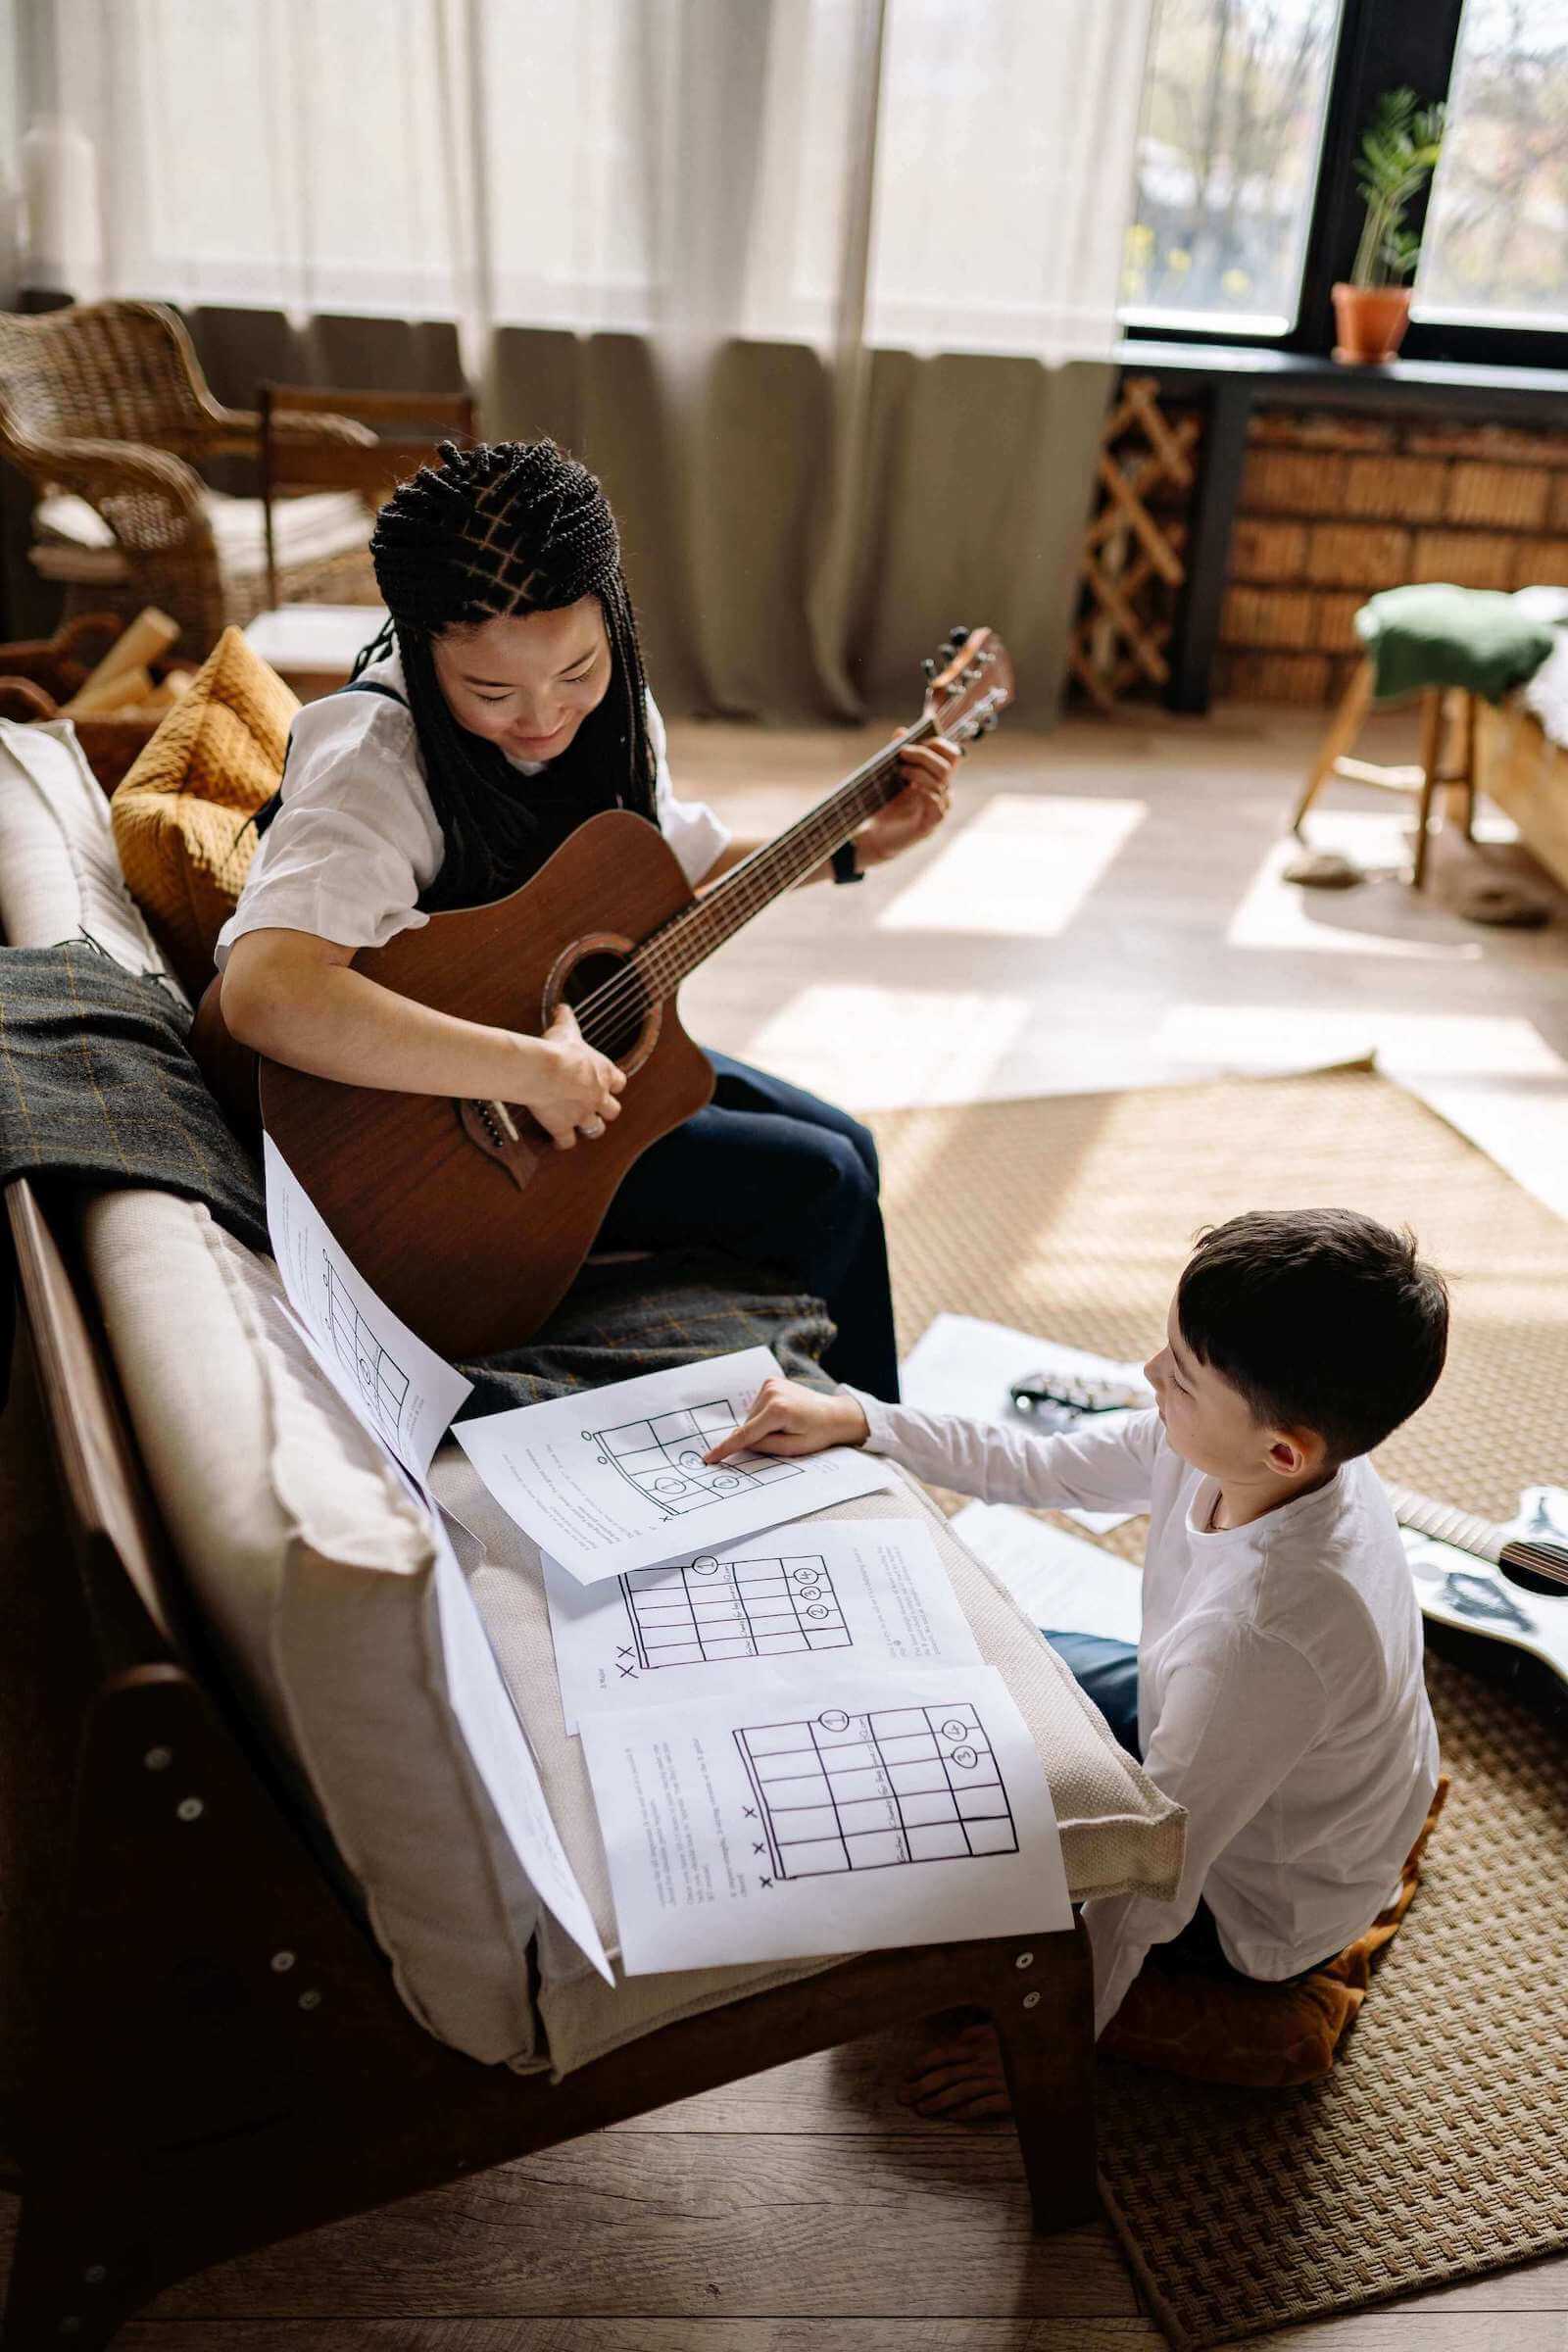 guitar teacher teaching the kid play the guitar at home